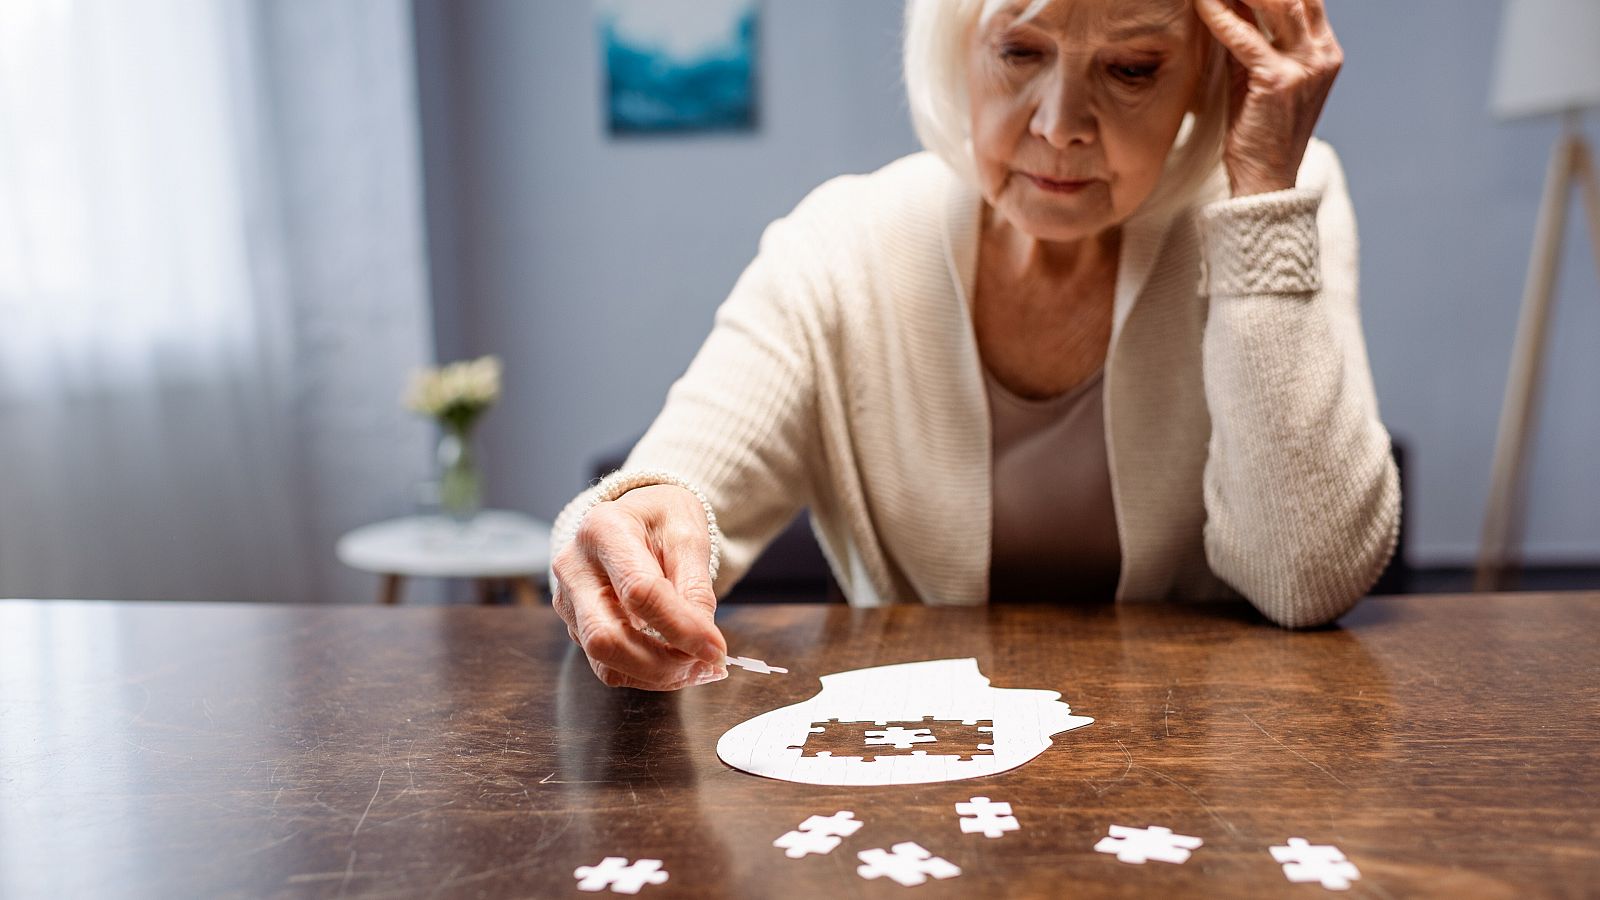 La mayor longevidad o los cambios hormonales podrían explicar por qué las mujeres son más propensas a padecer alzhéimer.